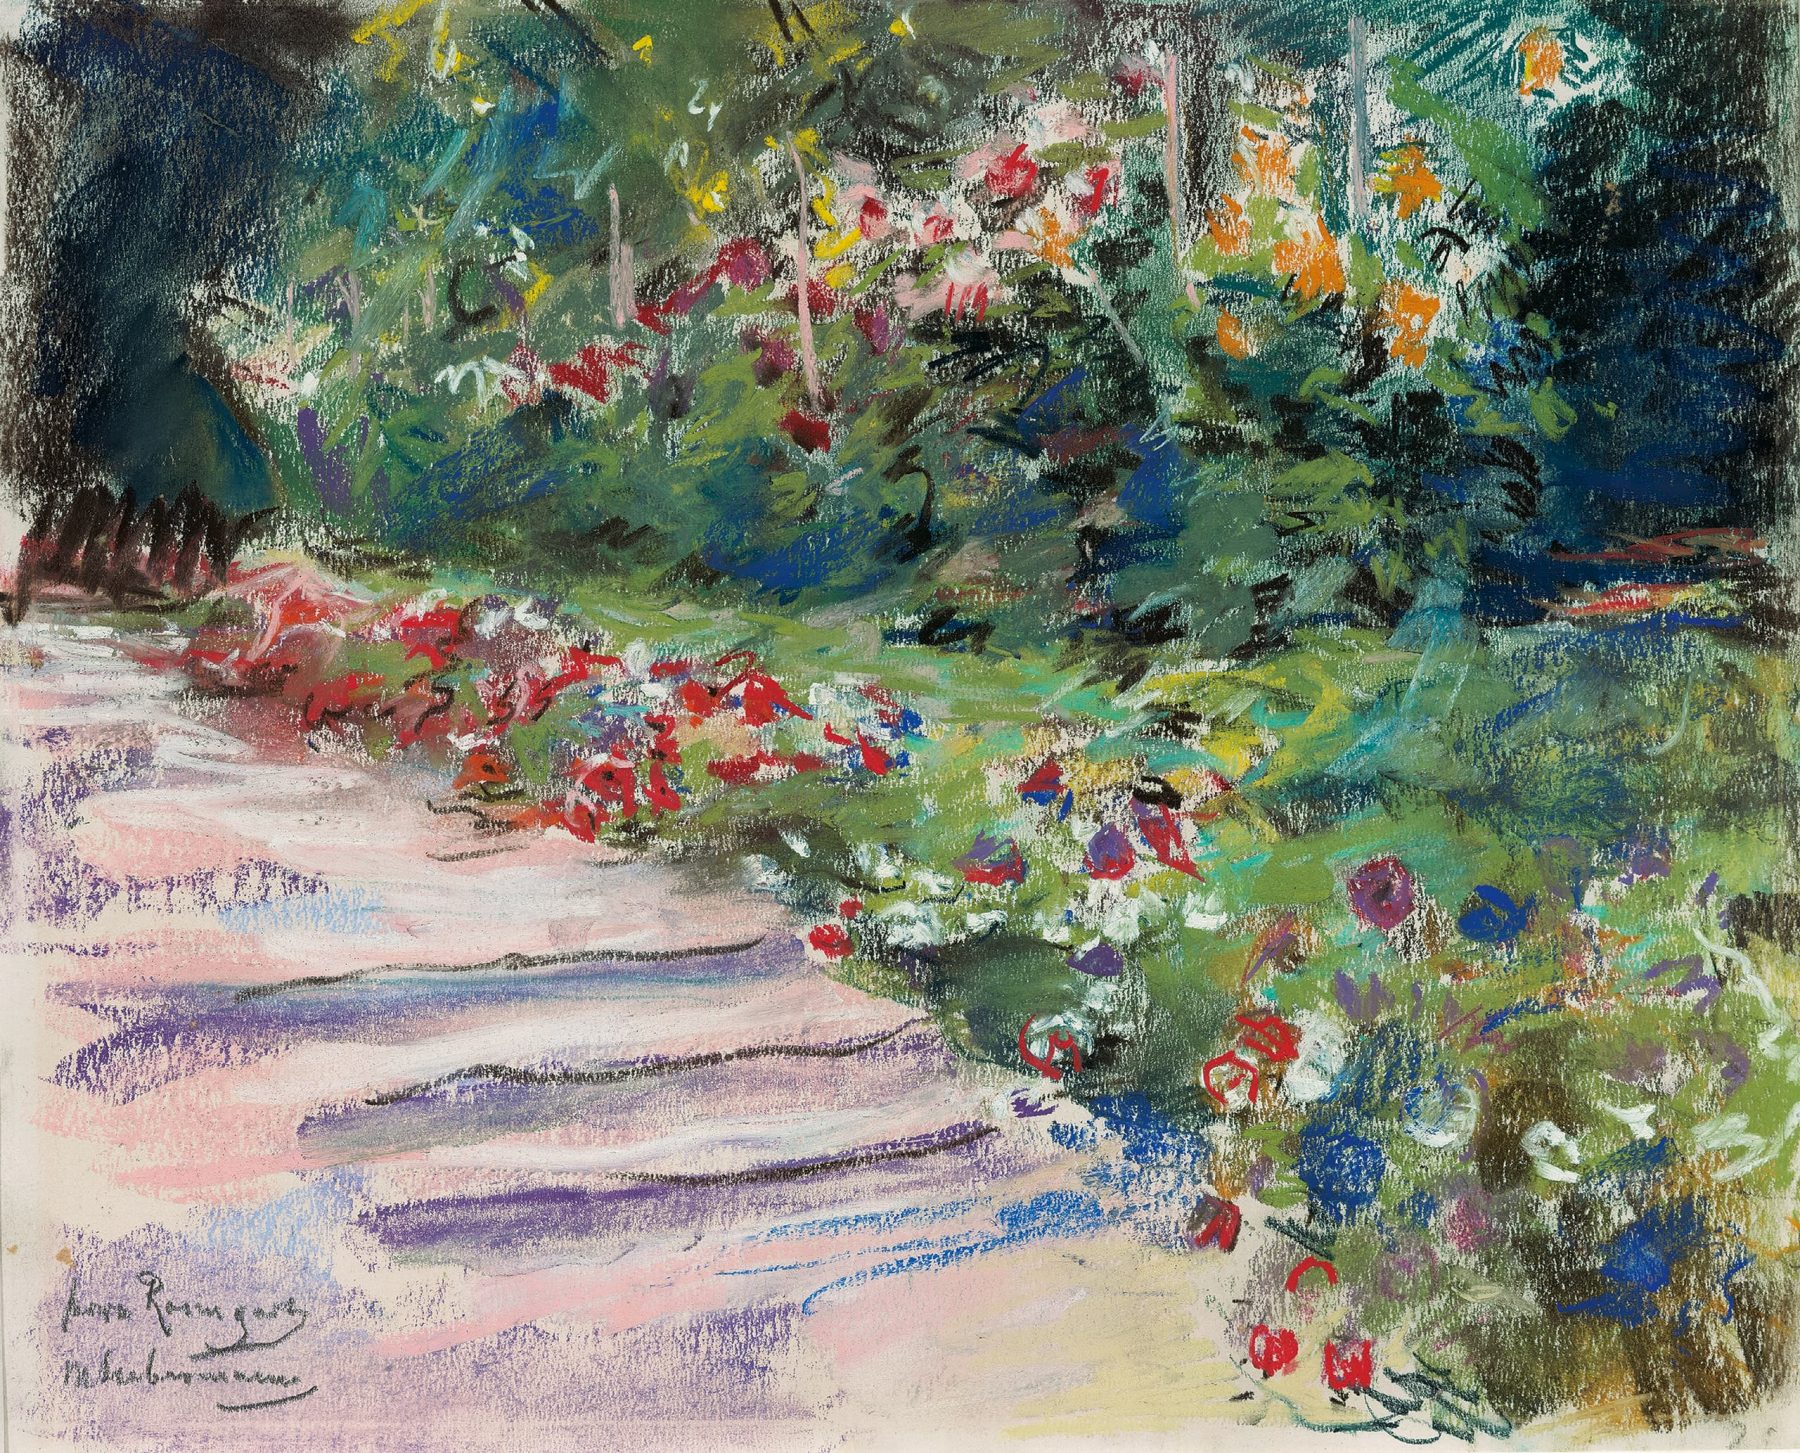 Pastellzeichnung des Gartens von Max Liebermann mit einer Treppe im Vordergund und bunten Blumen im rechten Bildteil